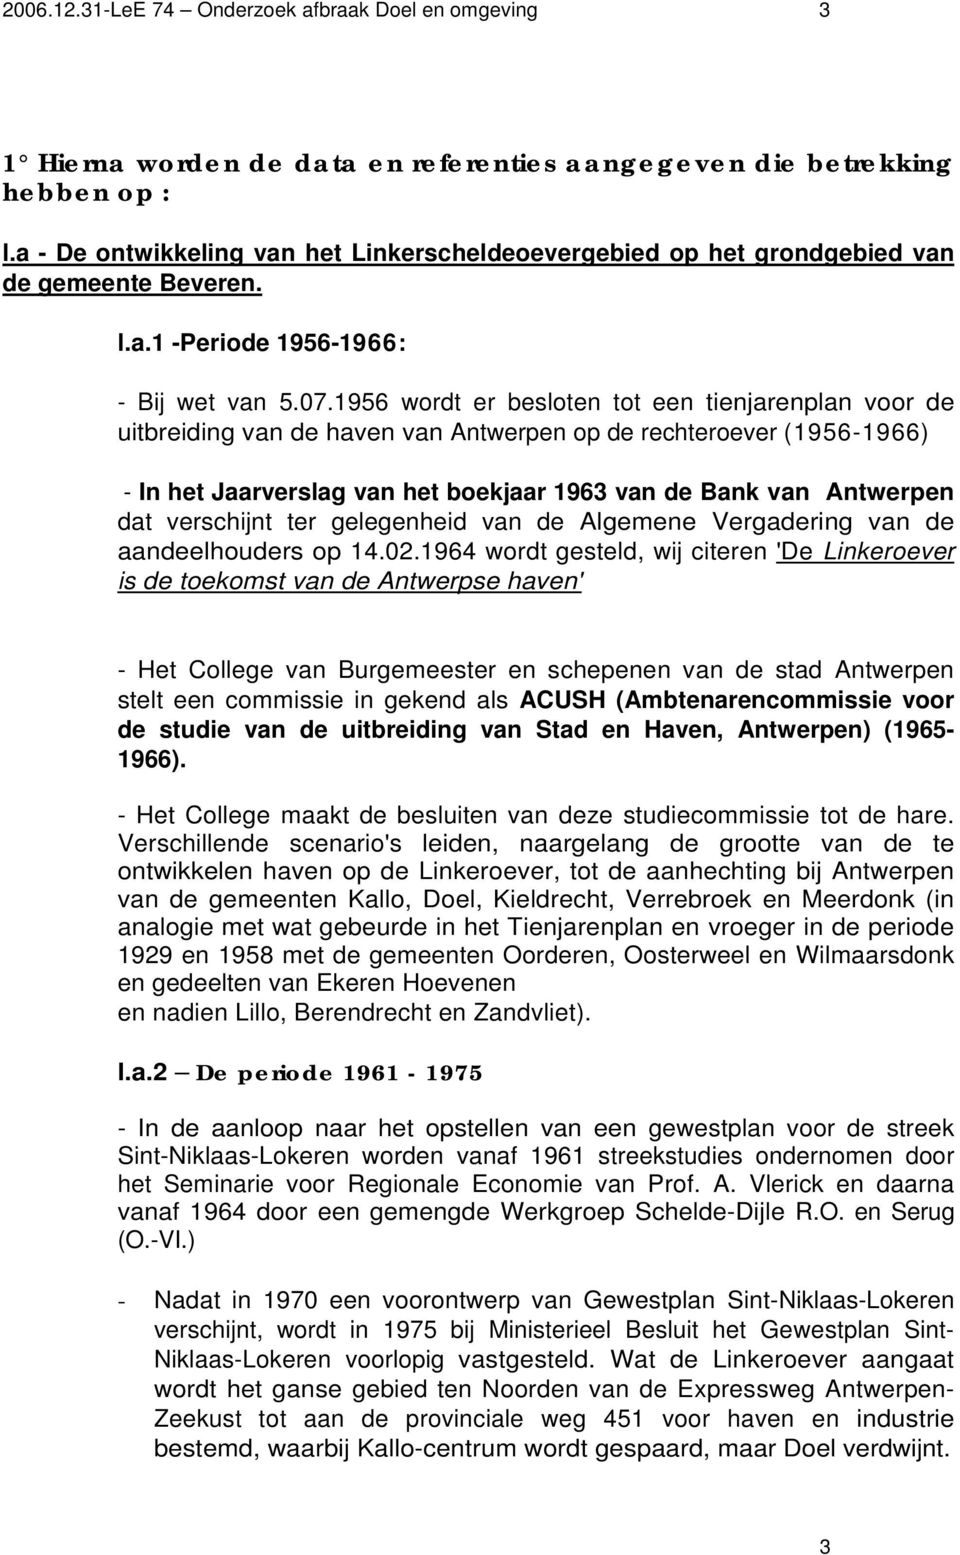 1956 wordt er besloten tot een tienjarenplan voor de uitbreiding van de haven van Antwerpen op de rechteroever (1956-1966) - In het Jaarverslag van het boekjaar 1963 van de Bank van Antwerpen dat